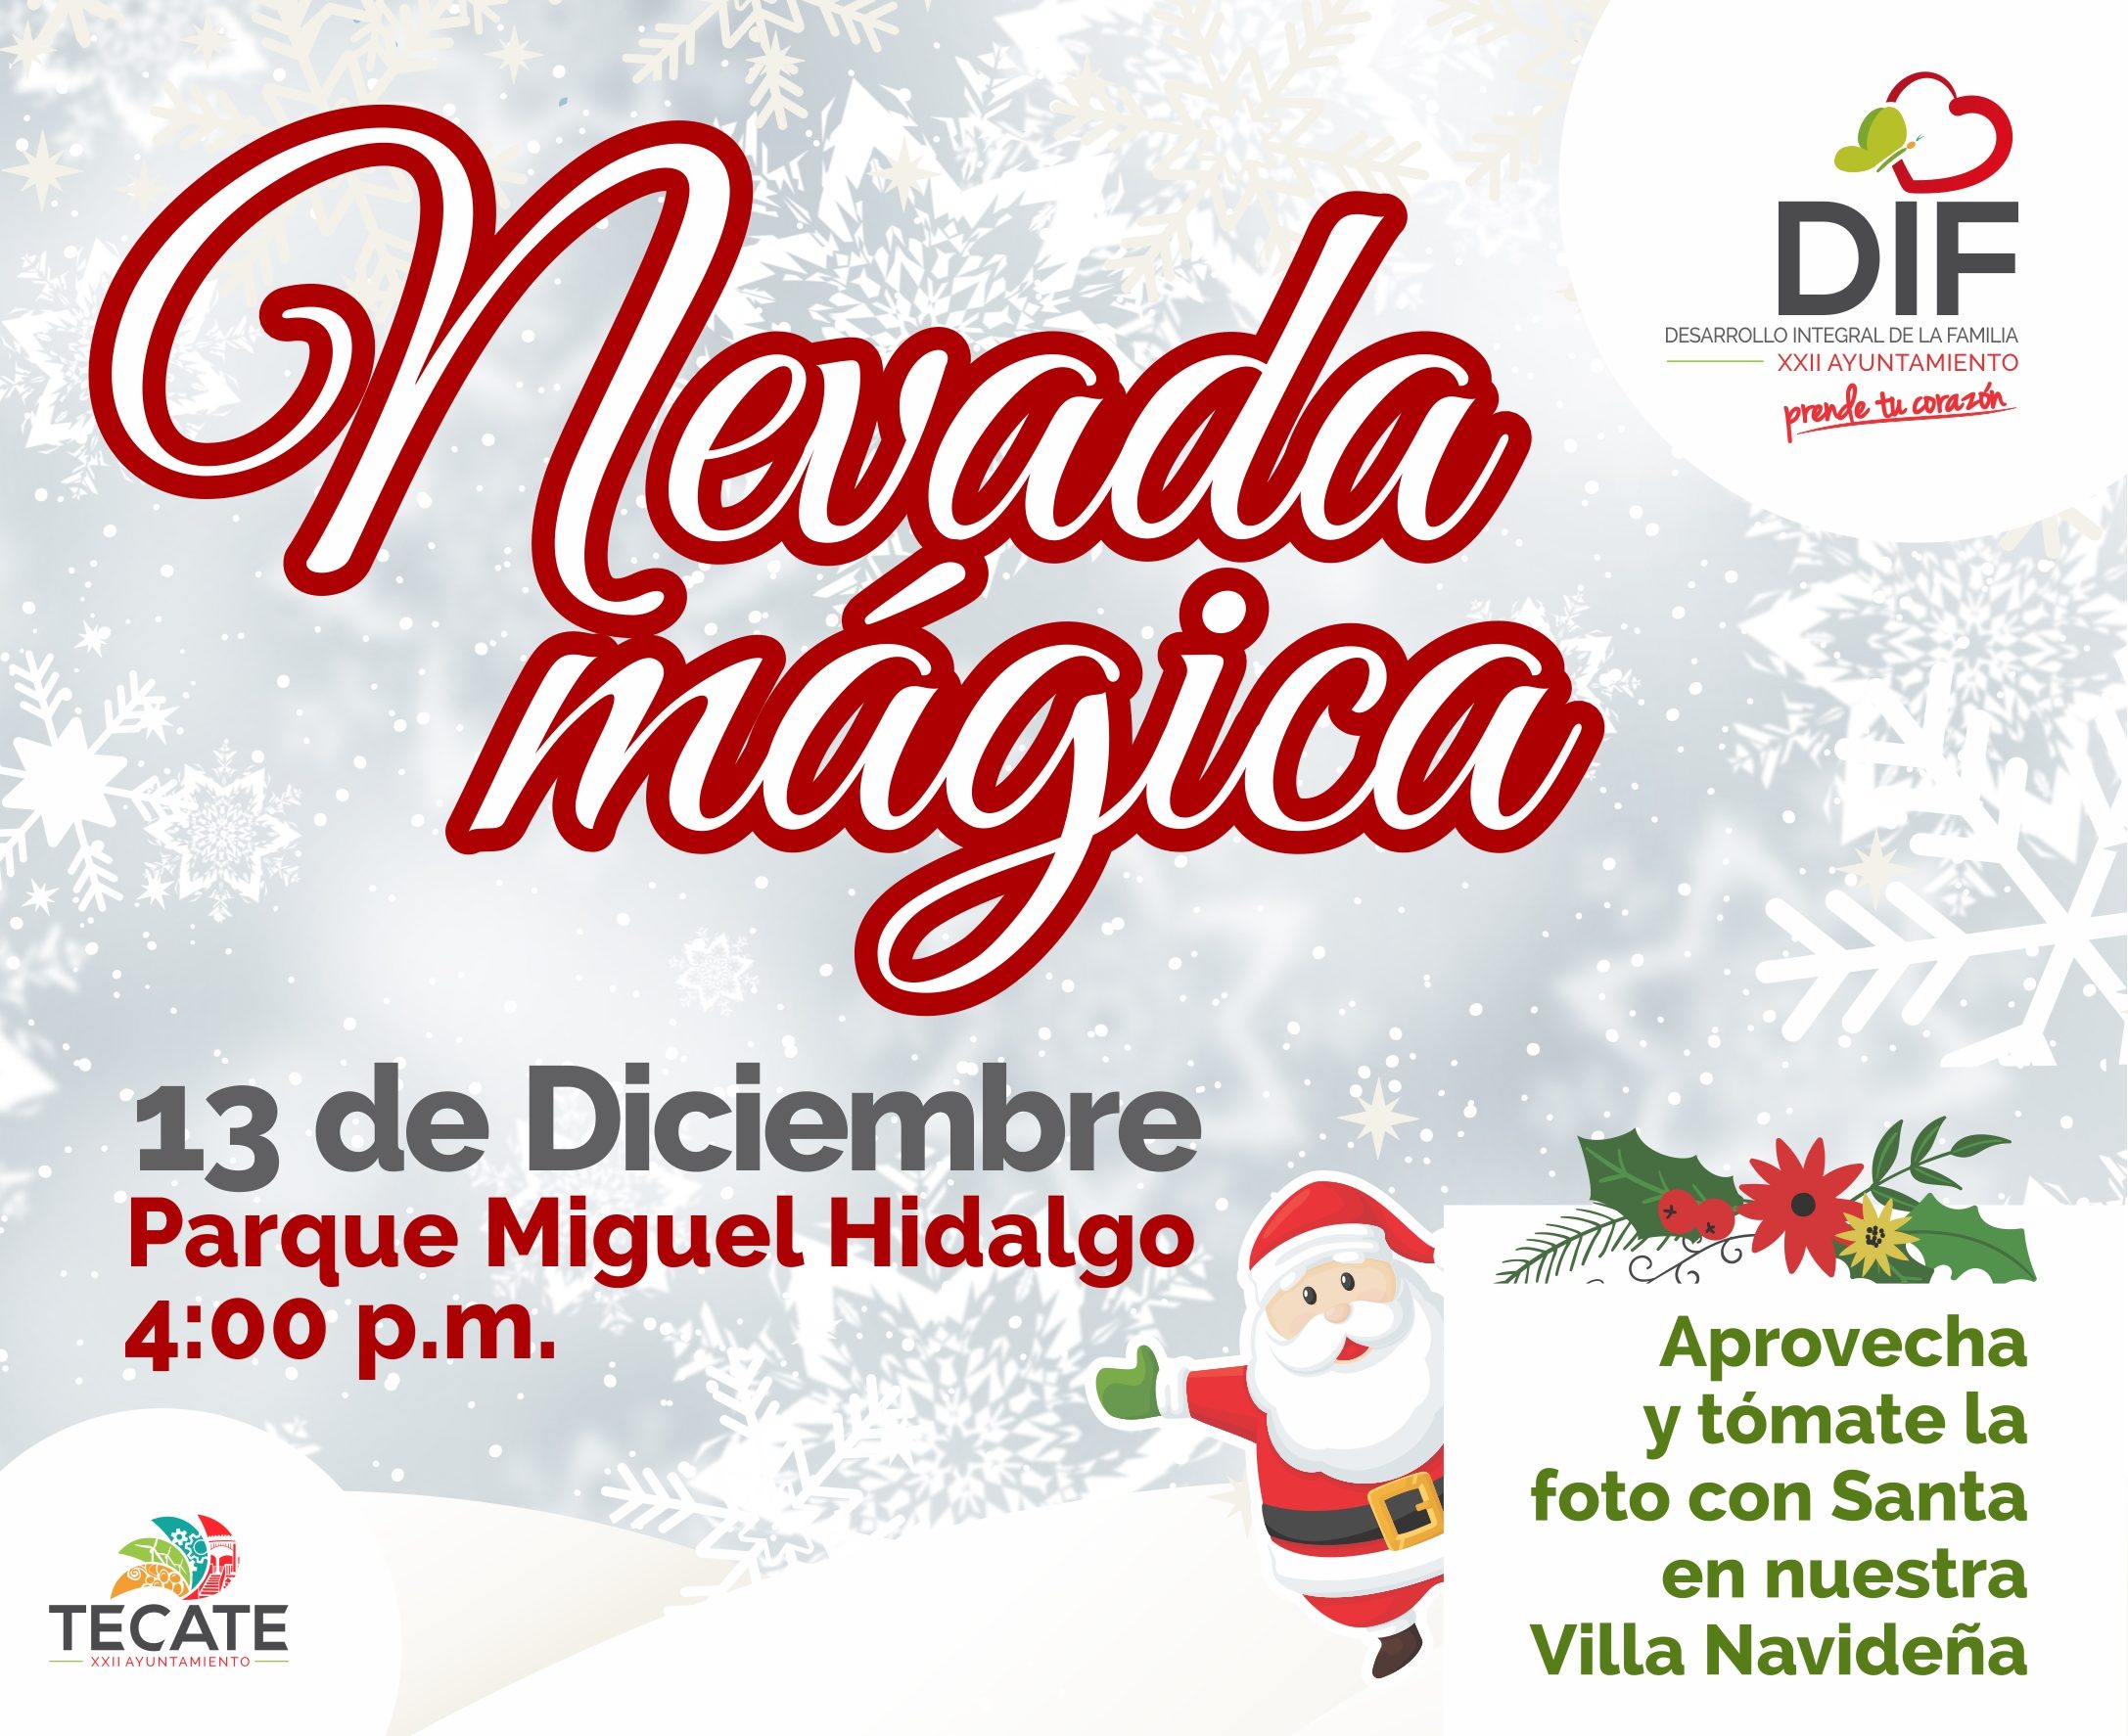 Invita DIF Tecate a Nevada Mágica en el parque Miguel Hidalgo